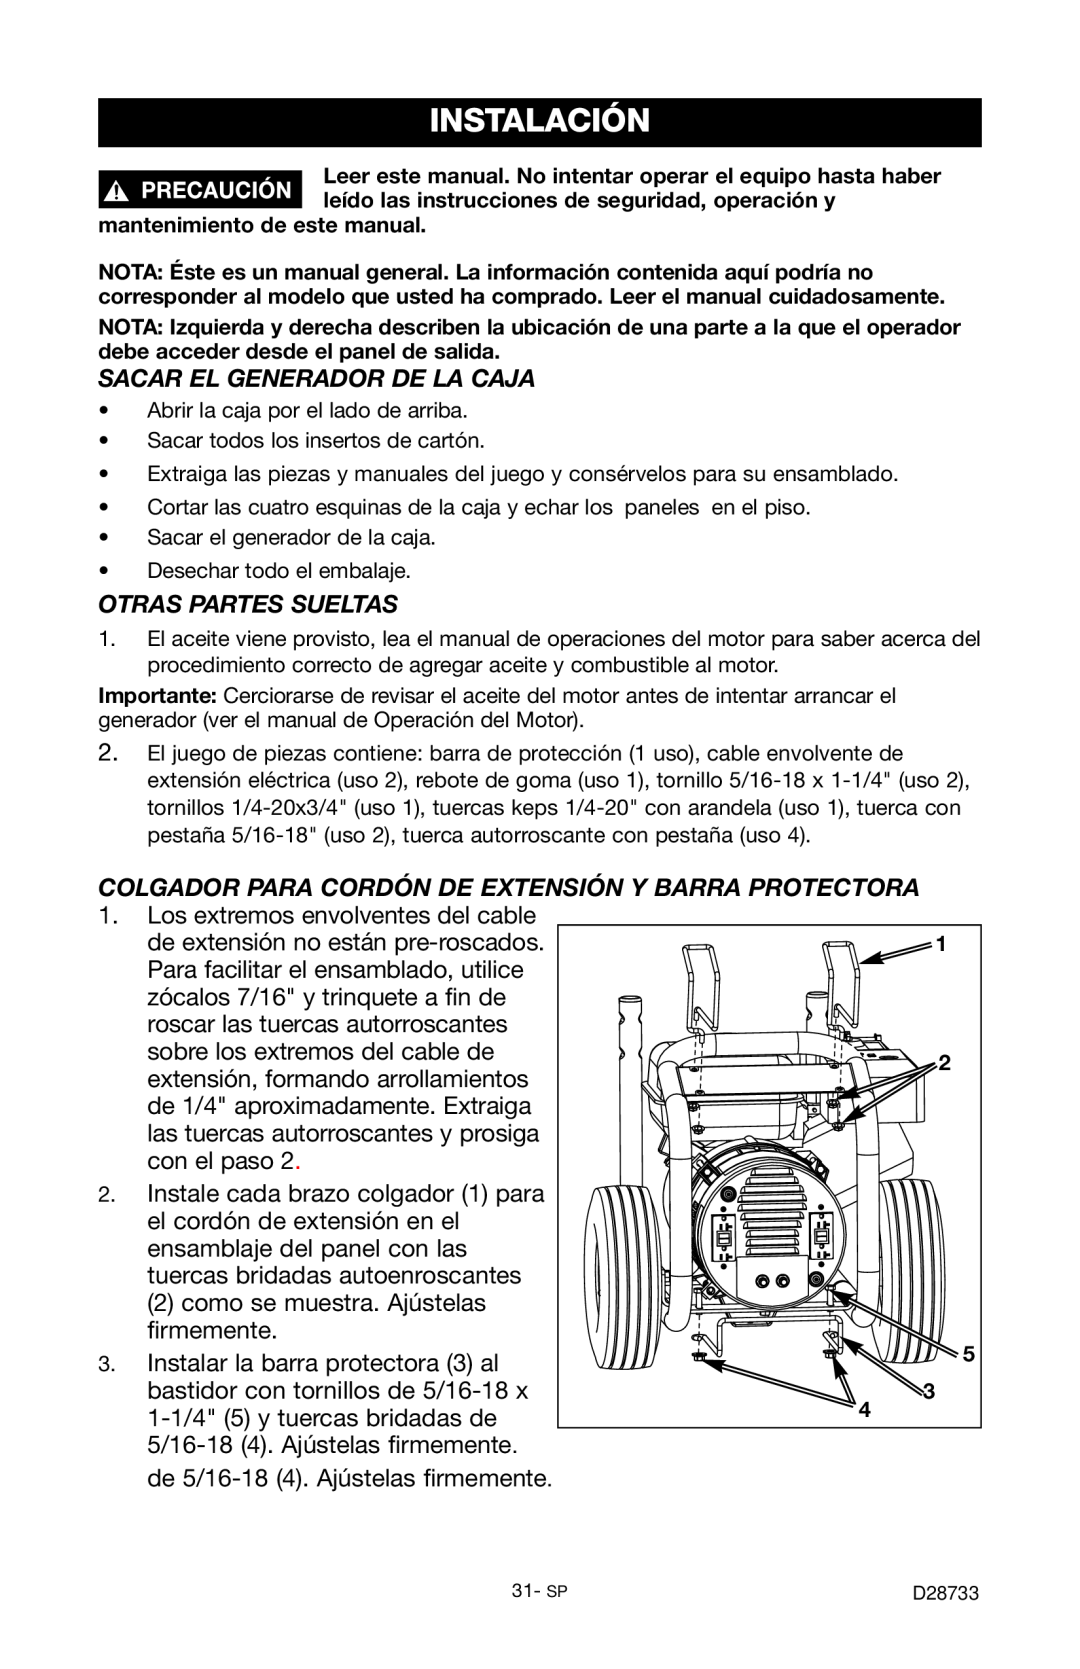 Porter-Cable D28733-034-0, PGN350 instruction manual Instalación, Sacar El Generador De La Caja, Otras Partes Sueltas 